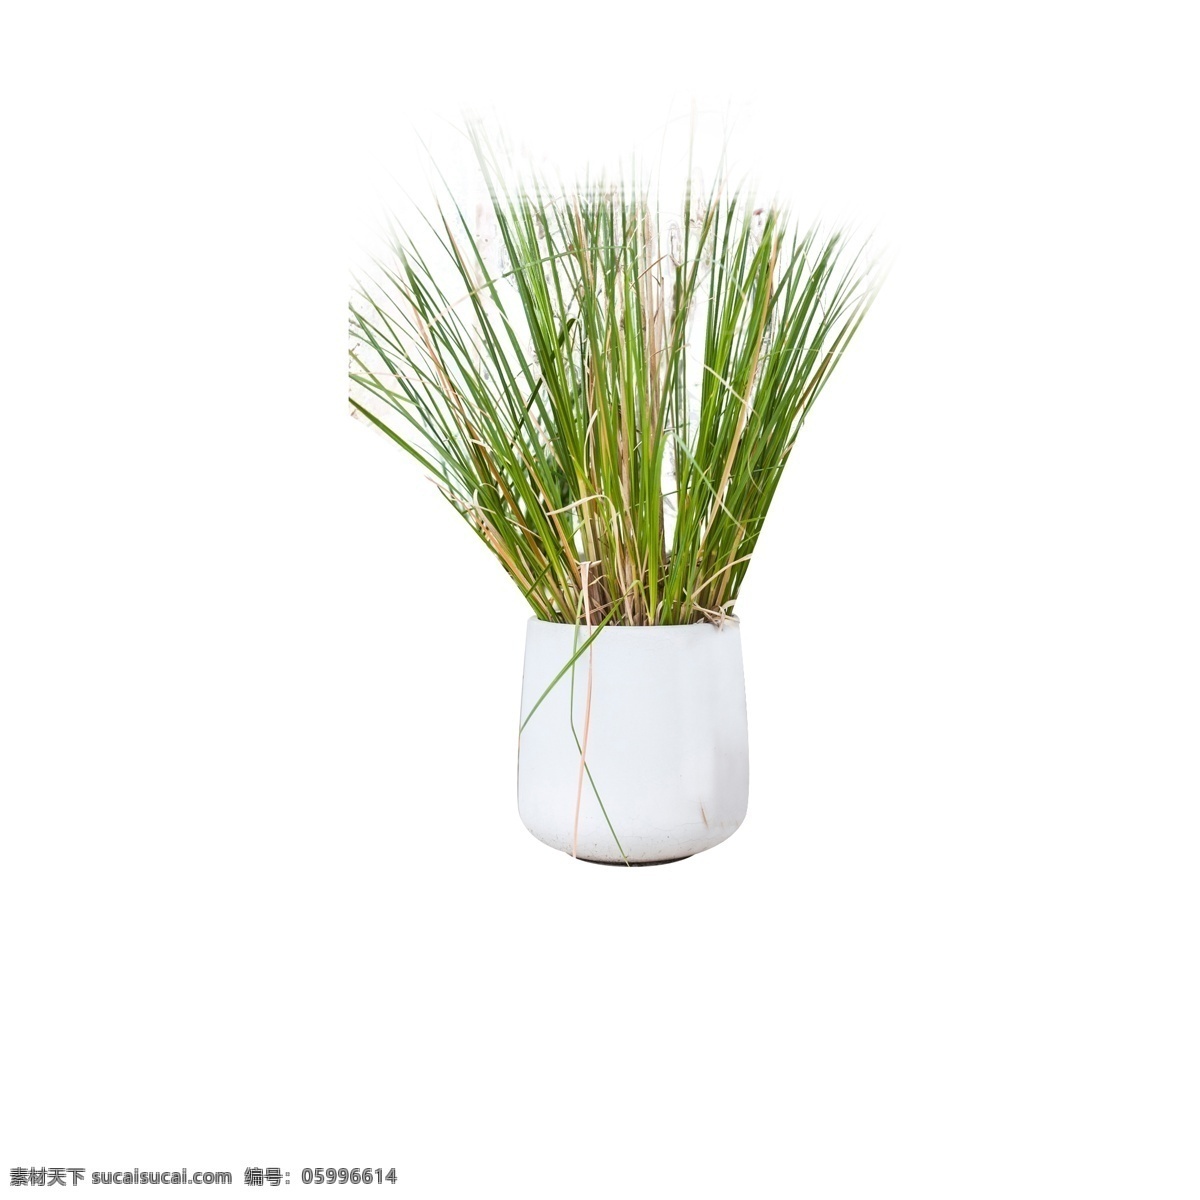 绿色植物 花盆 元素 绿色 草 植物 白色瓷器 简约 意境 装饰 大自然 风景